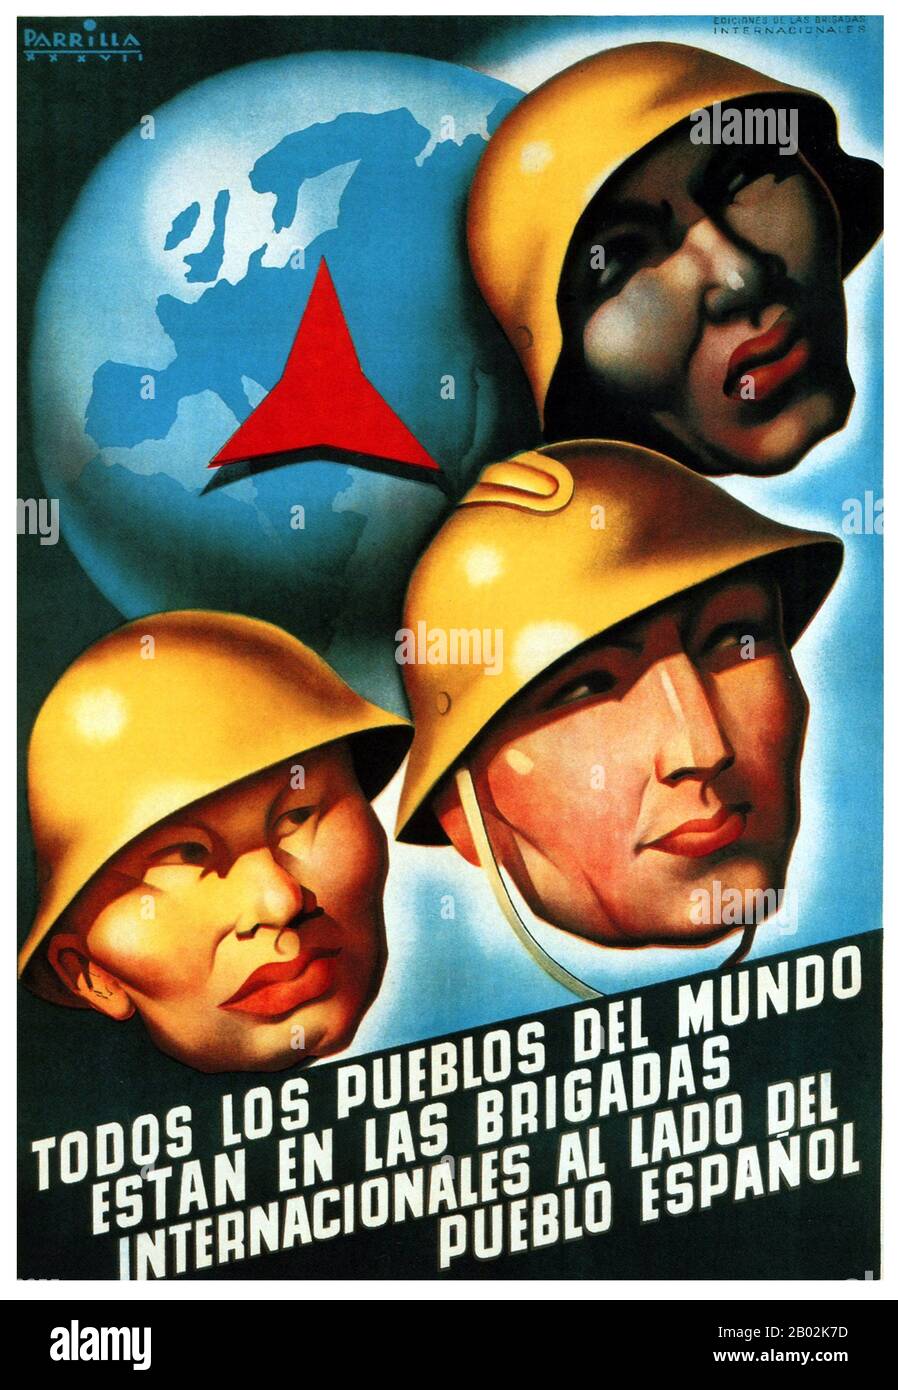 La guerre civile espagnole a été combattue du 17 juillet 1936 au 1er avril 1939 entre les Républicains, loyaux à la République espagnole démocratiquement élue, et les nationalistes, un groupe rebelle dirigé par le général Francisco Franco. Les nationalistes l'ont emporté, et Franco a dirigé l'Espagne pour les 36 prochaines années, de 1939 à sa mort en 1975. Les nationalistes ont avancé de leurs bastions dans le sud et l'ouest, capturant la majeure partie de la côte nord de l'Espagne en 1937. Ils ont également assiégé Madrid et la région au sud et à l'ouest pour une grande partie de la guerre. Capturer de grandes parties de la Catalogne en 1938 et 1939, le W Banque D'Images